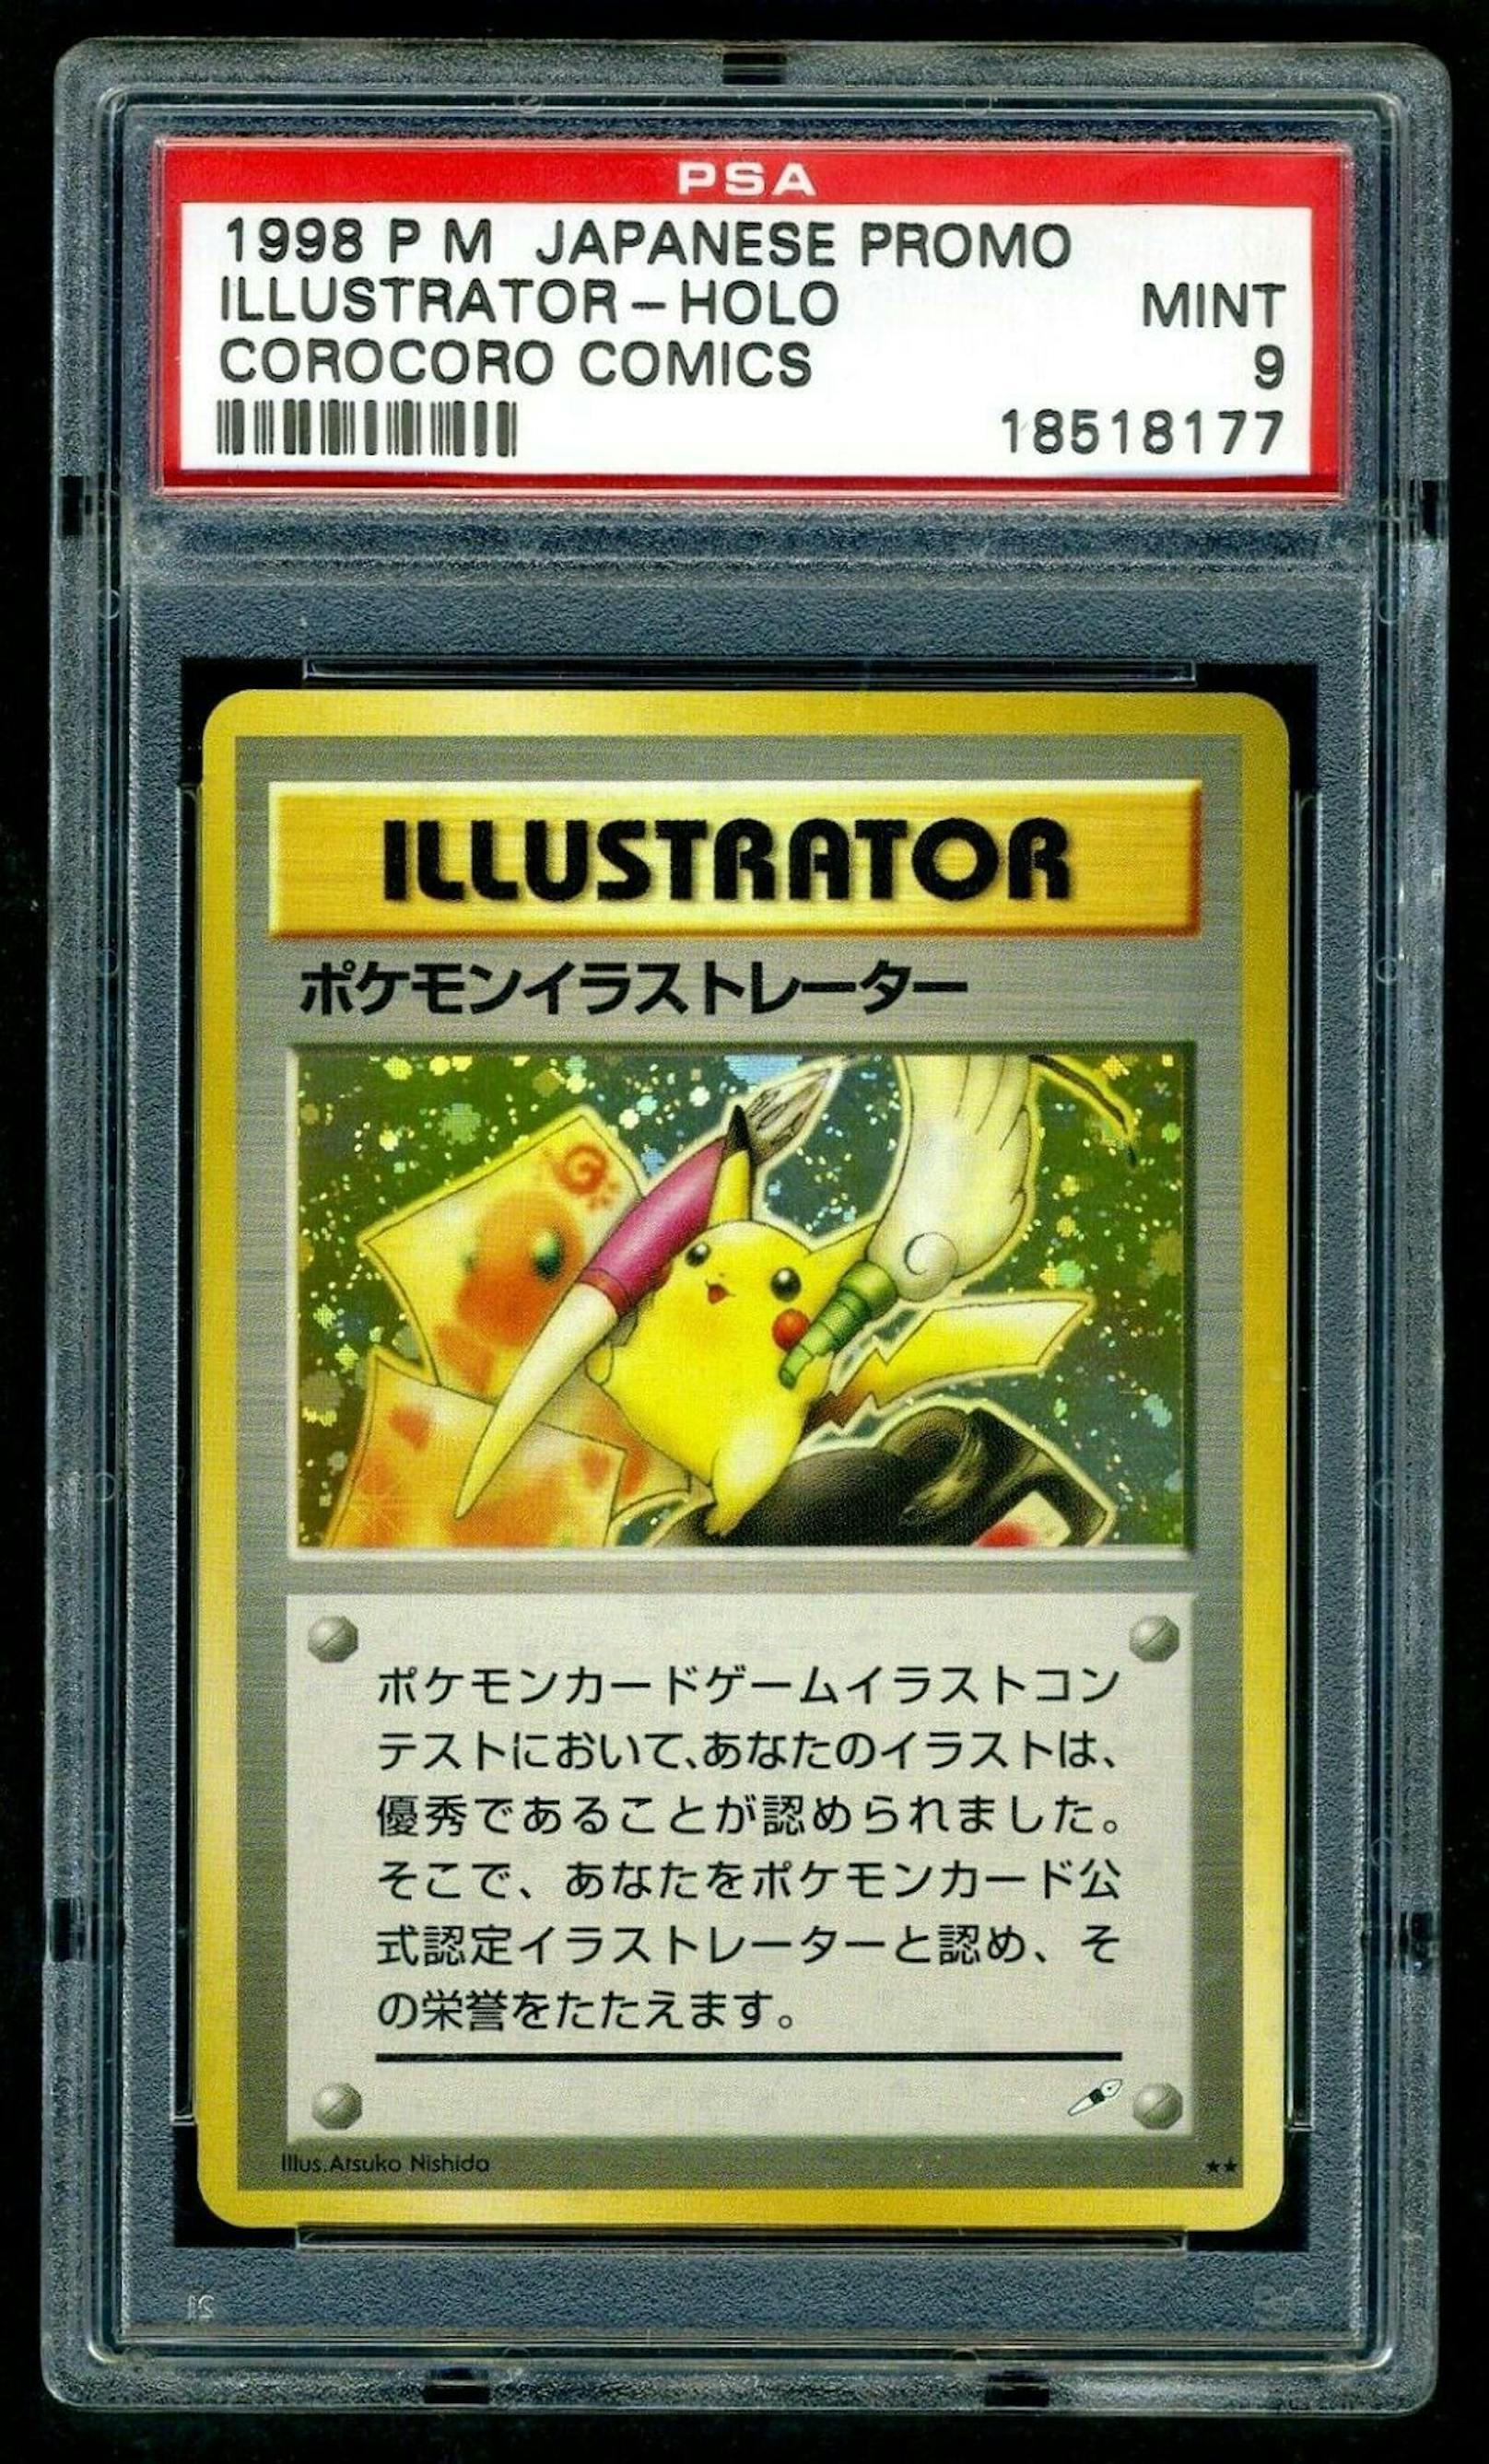 Eine der seltensten und teuersten Karten. Die "Pikachu Illustrator" wurde 1997 in einem japanischen Magazin durch einen Kunstwettbewerb verlost. Eine der 19 existierenden Karten wurde für 195.000 versteigert.